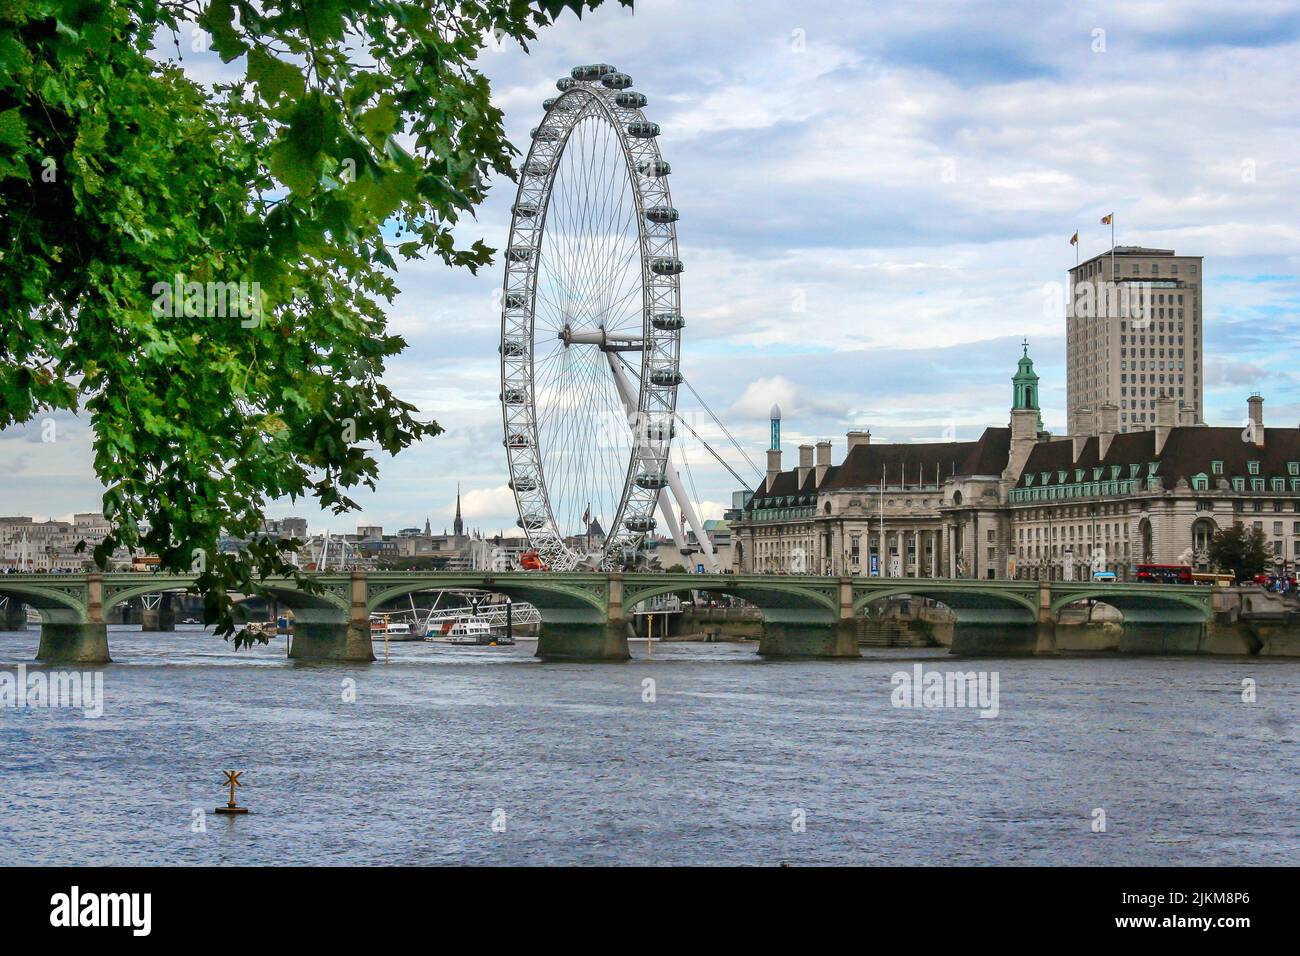 Una hermosa escena de las norias London Eye en Londres, el Reino Unido, con un cielo azul nublado Foto de stock